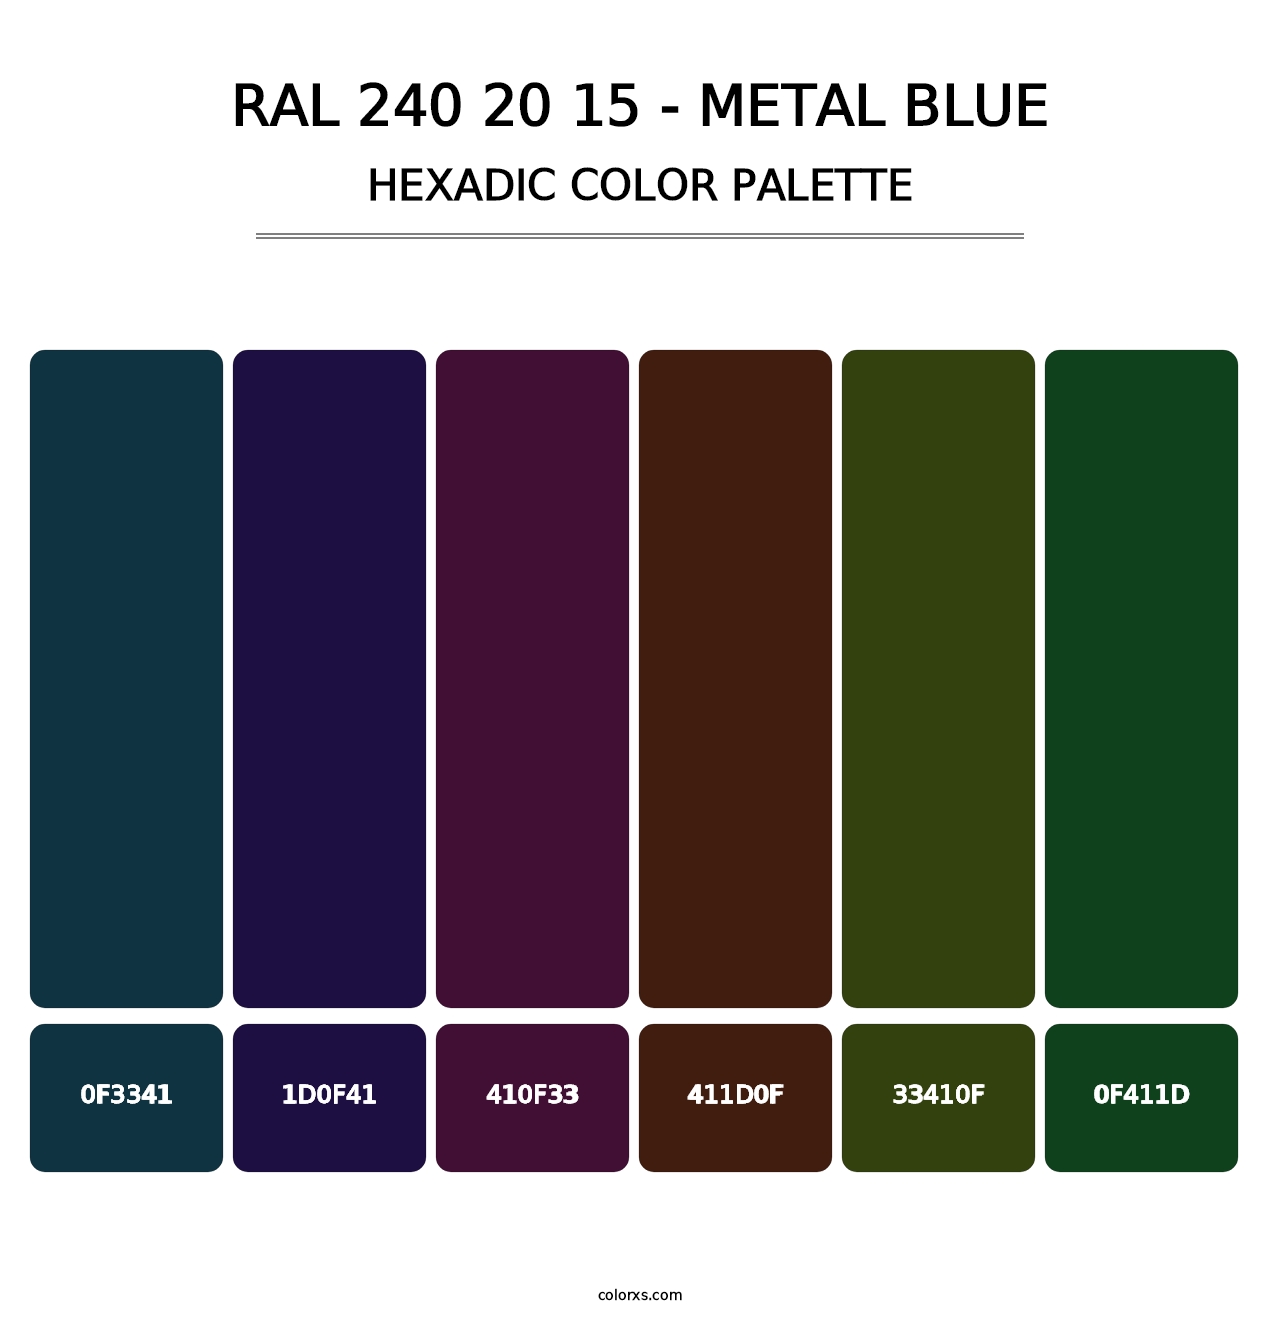 RAL 240 20 15 - Metal Blue - Hexadic Color Palette